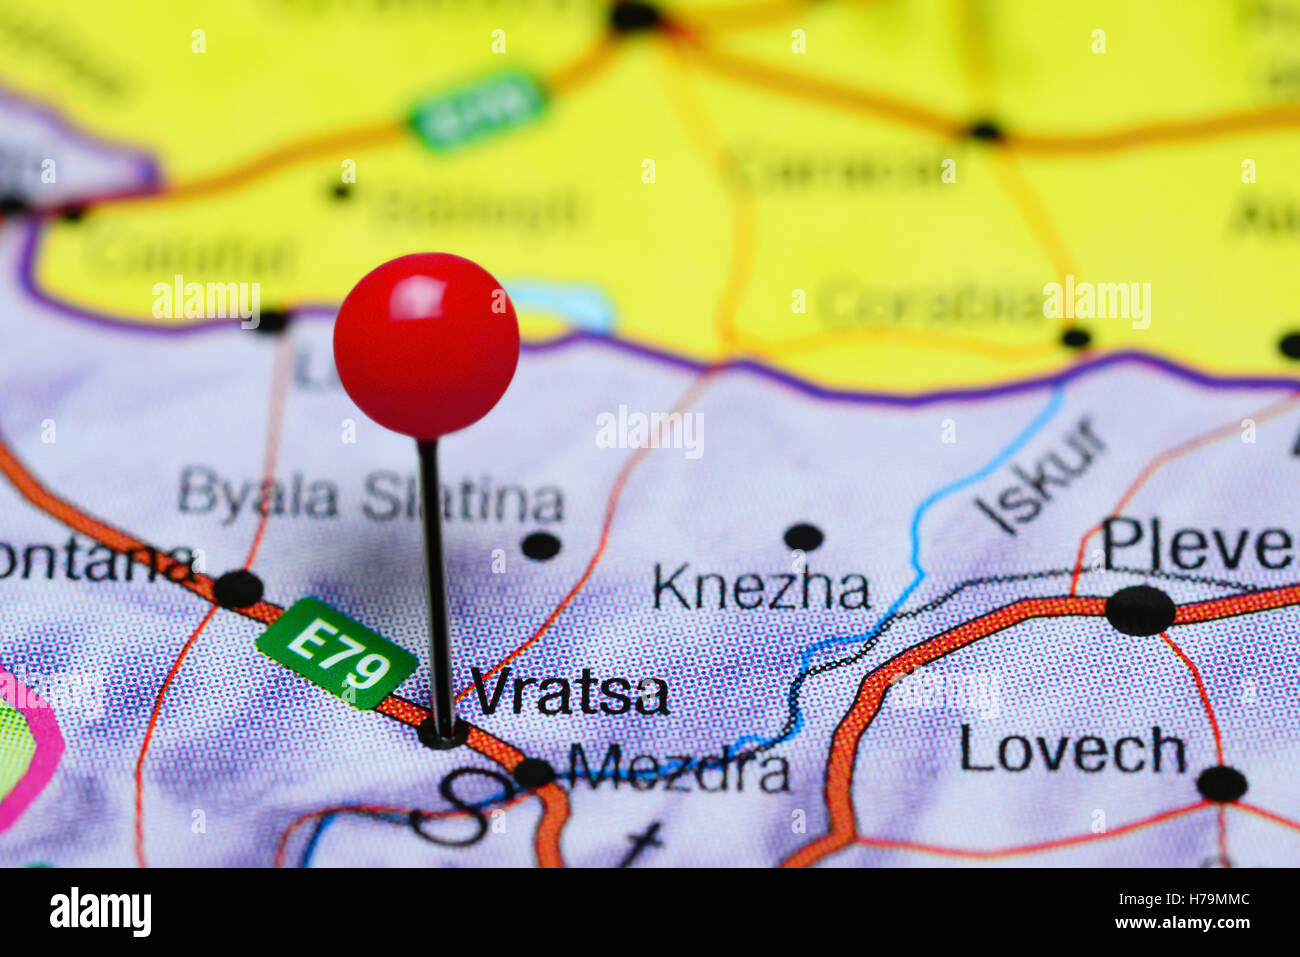 Vratsa pinned on a map of Bulgaria Stock Photo